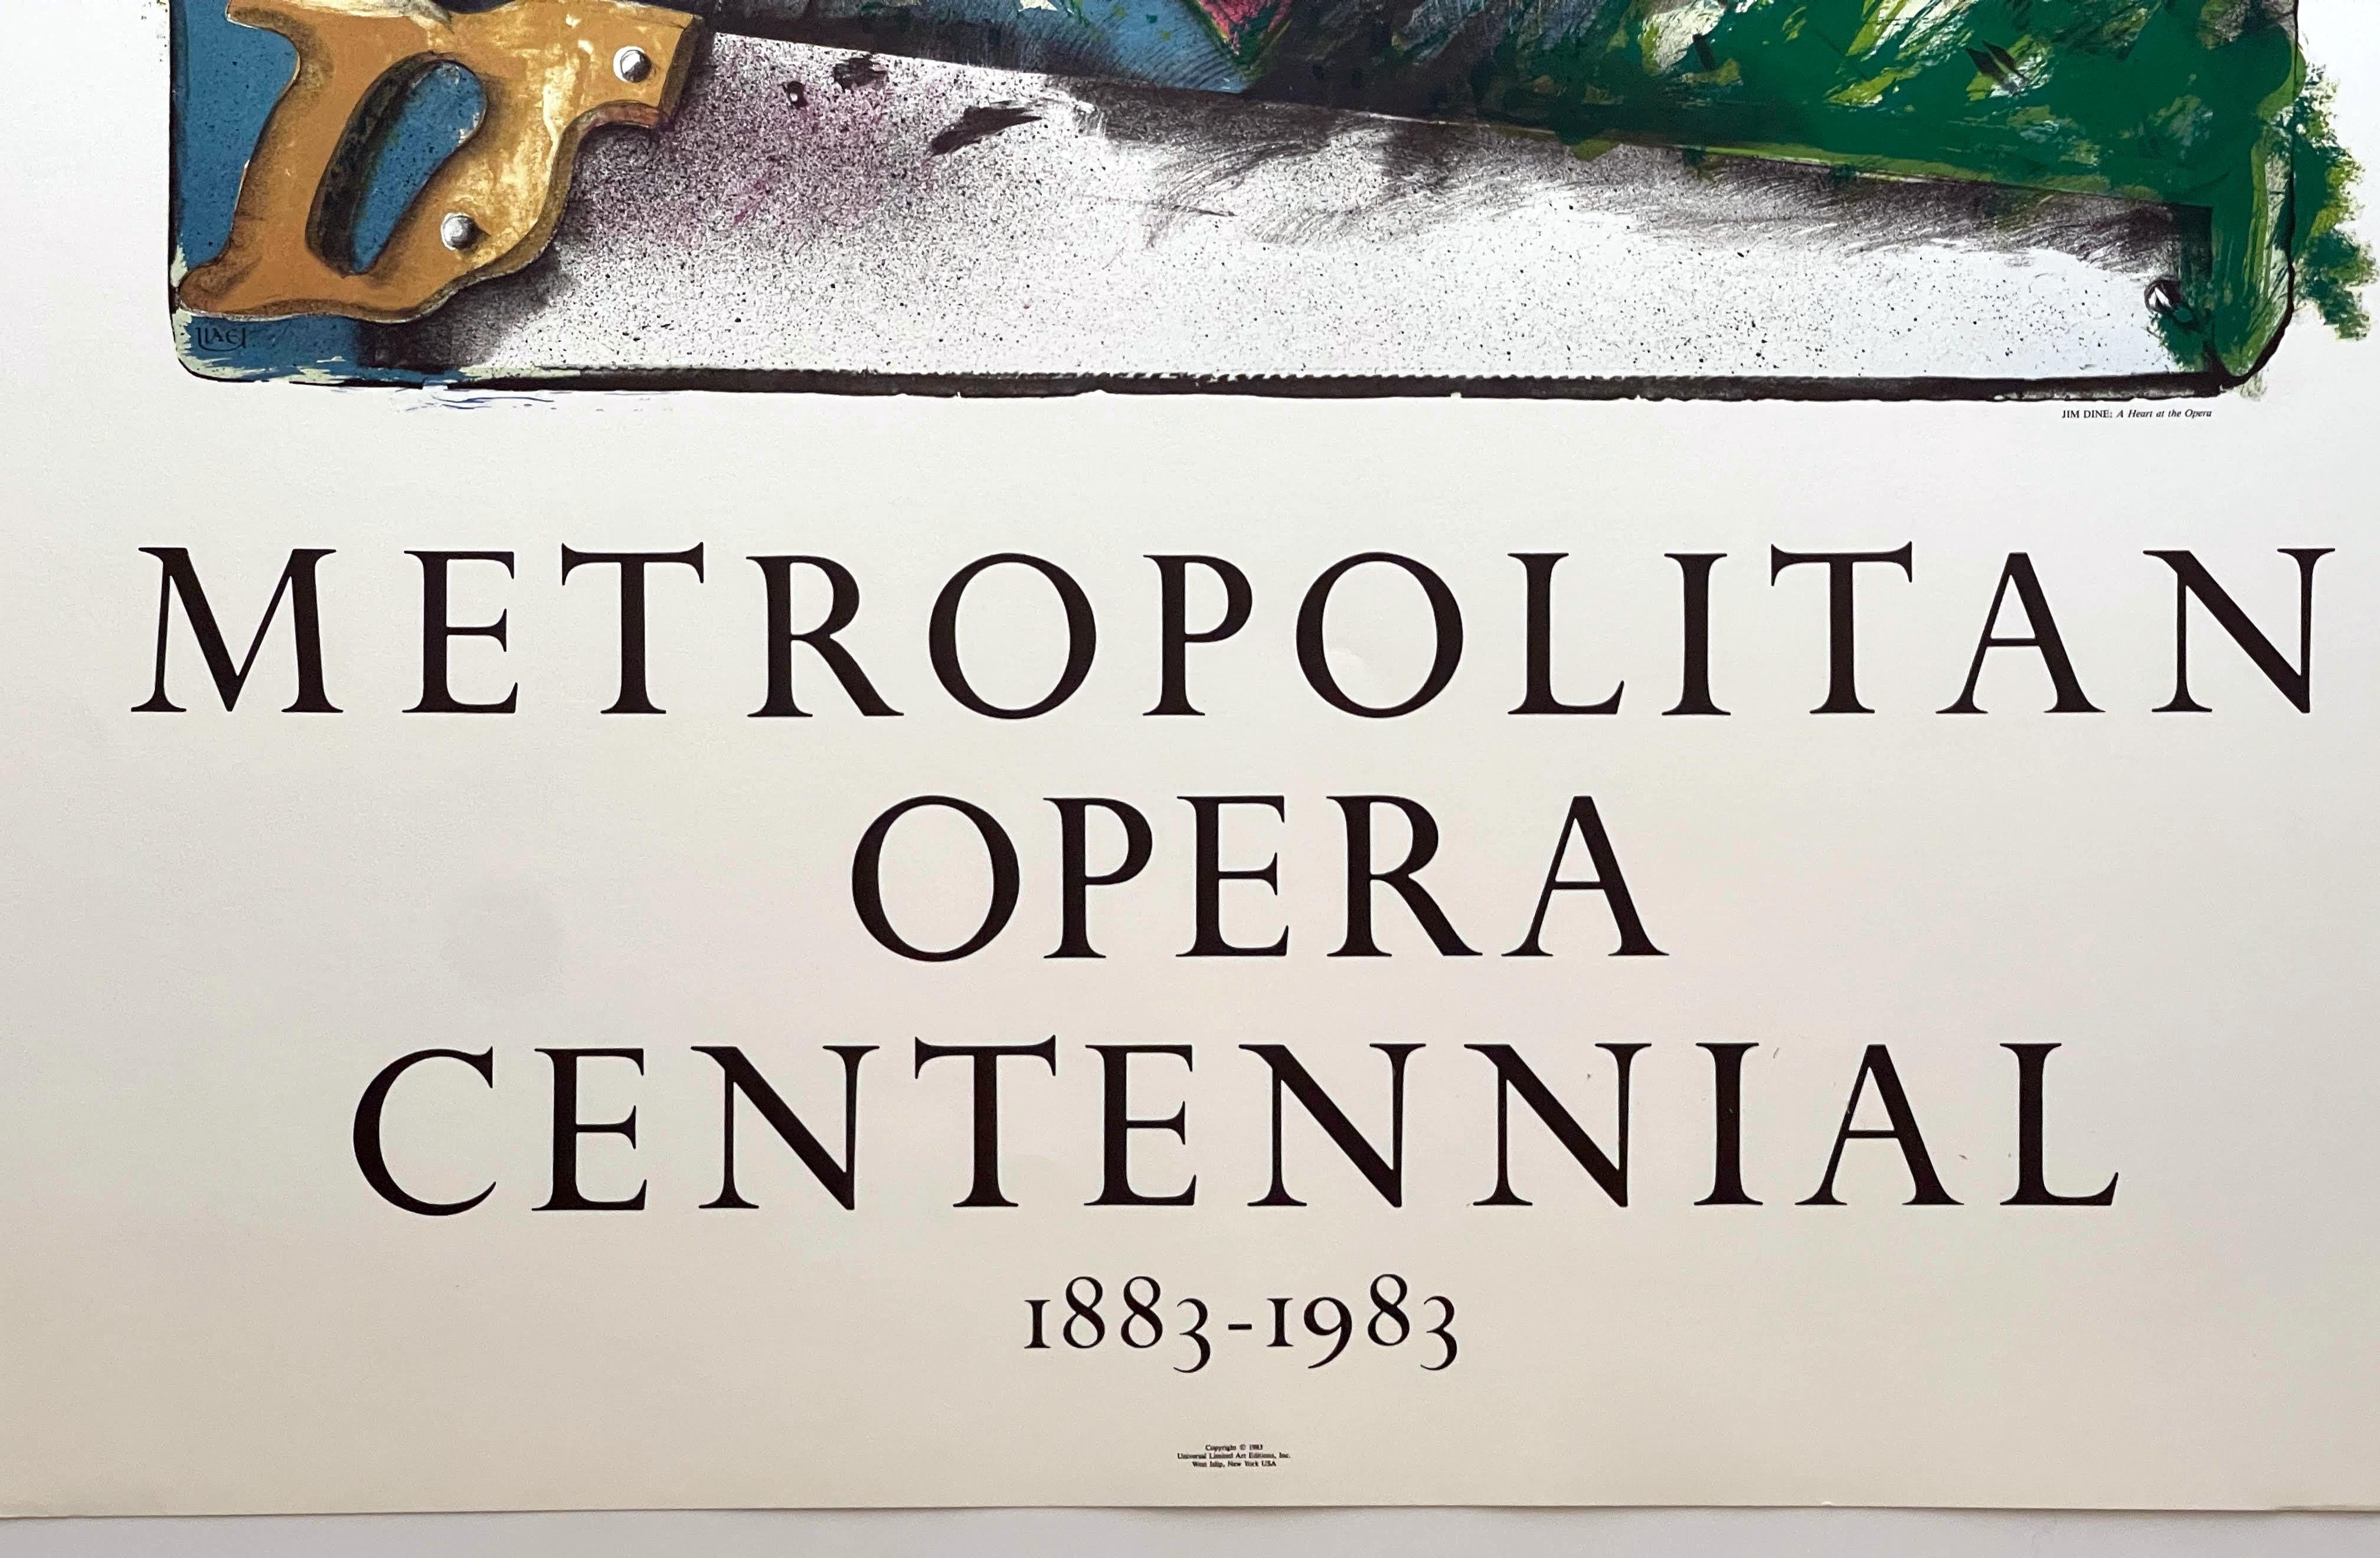 Rosa Herz: Metropolitan Opera Centennial 1883-1983 Lithographie Pop Art Poster, Pop Art – Print von Jim Dine